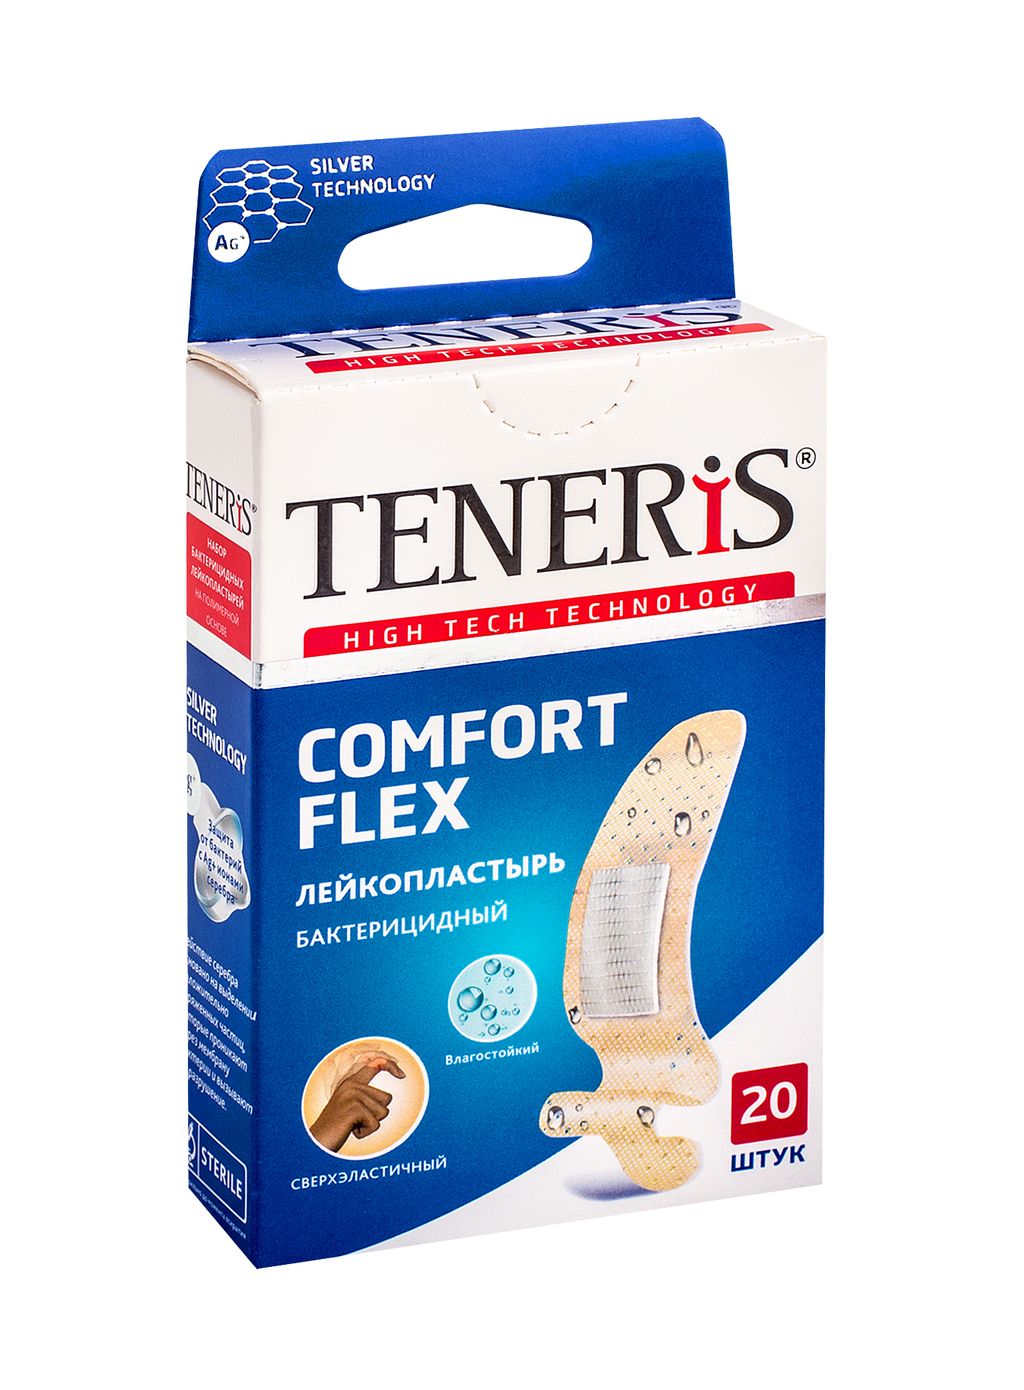 фото упаковки Teneris Comfort Flex лейкопластырь бактерицидный